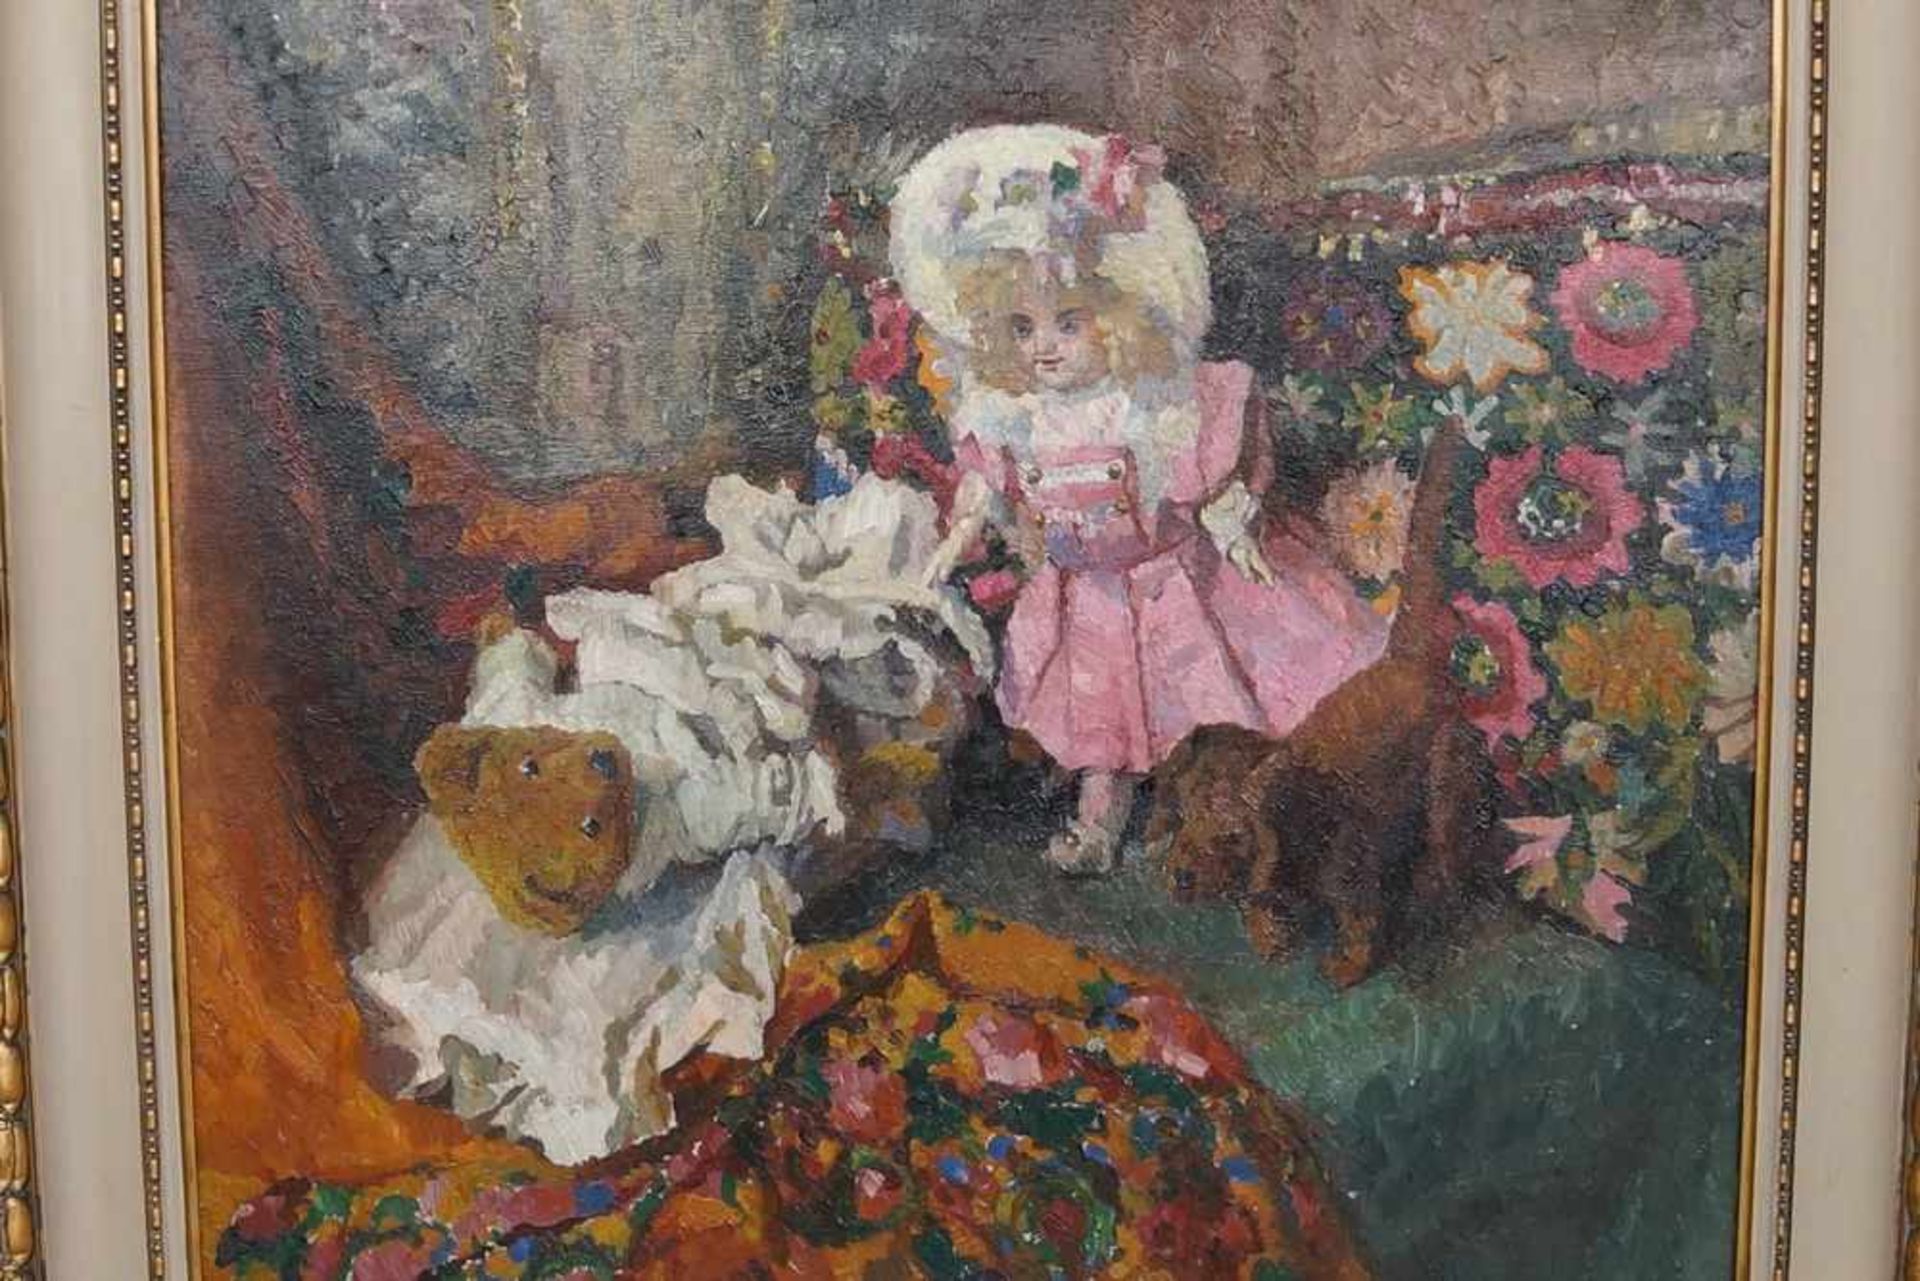 Liebliches Gemälde in Öl auf Leinwand, gerahmt, Kind mit Teddybär und Hund, 103x111cm- - -24.00 % - Bild 2 aus 6